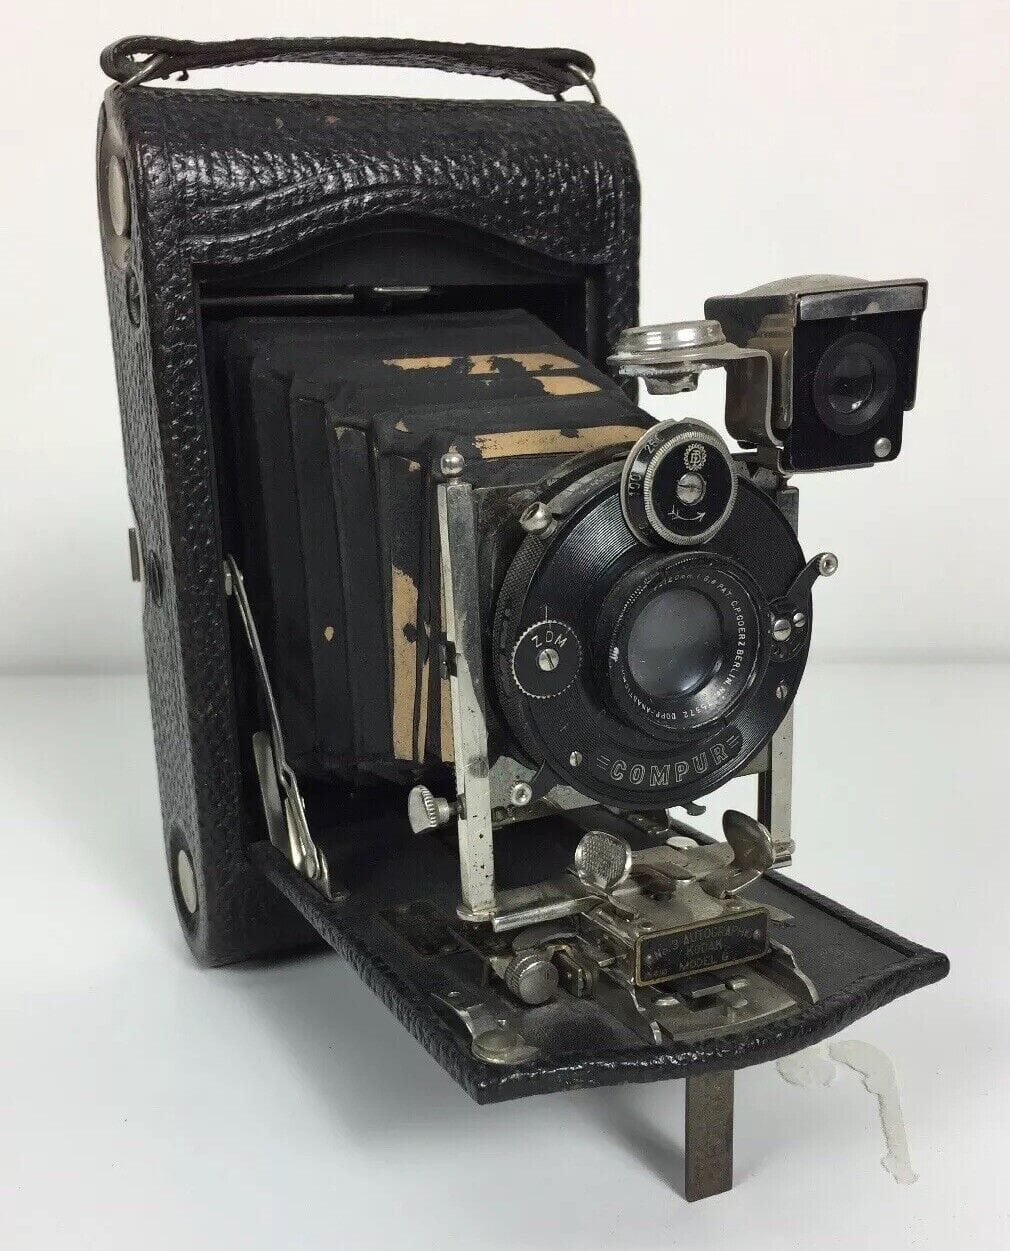 Cinepresa Istantanea Kodak Vintage Degli Anni '70 Immagine Editoriale -  Immagine di fotocamera, tecnologia: 207741395